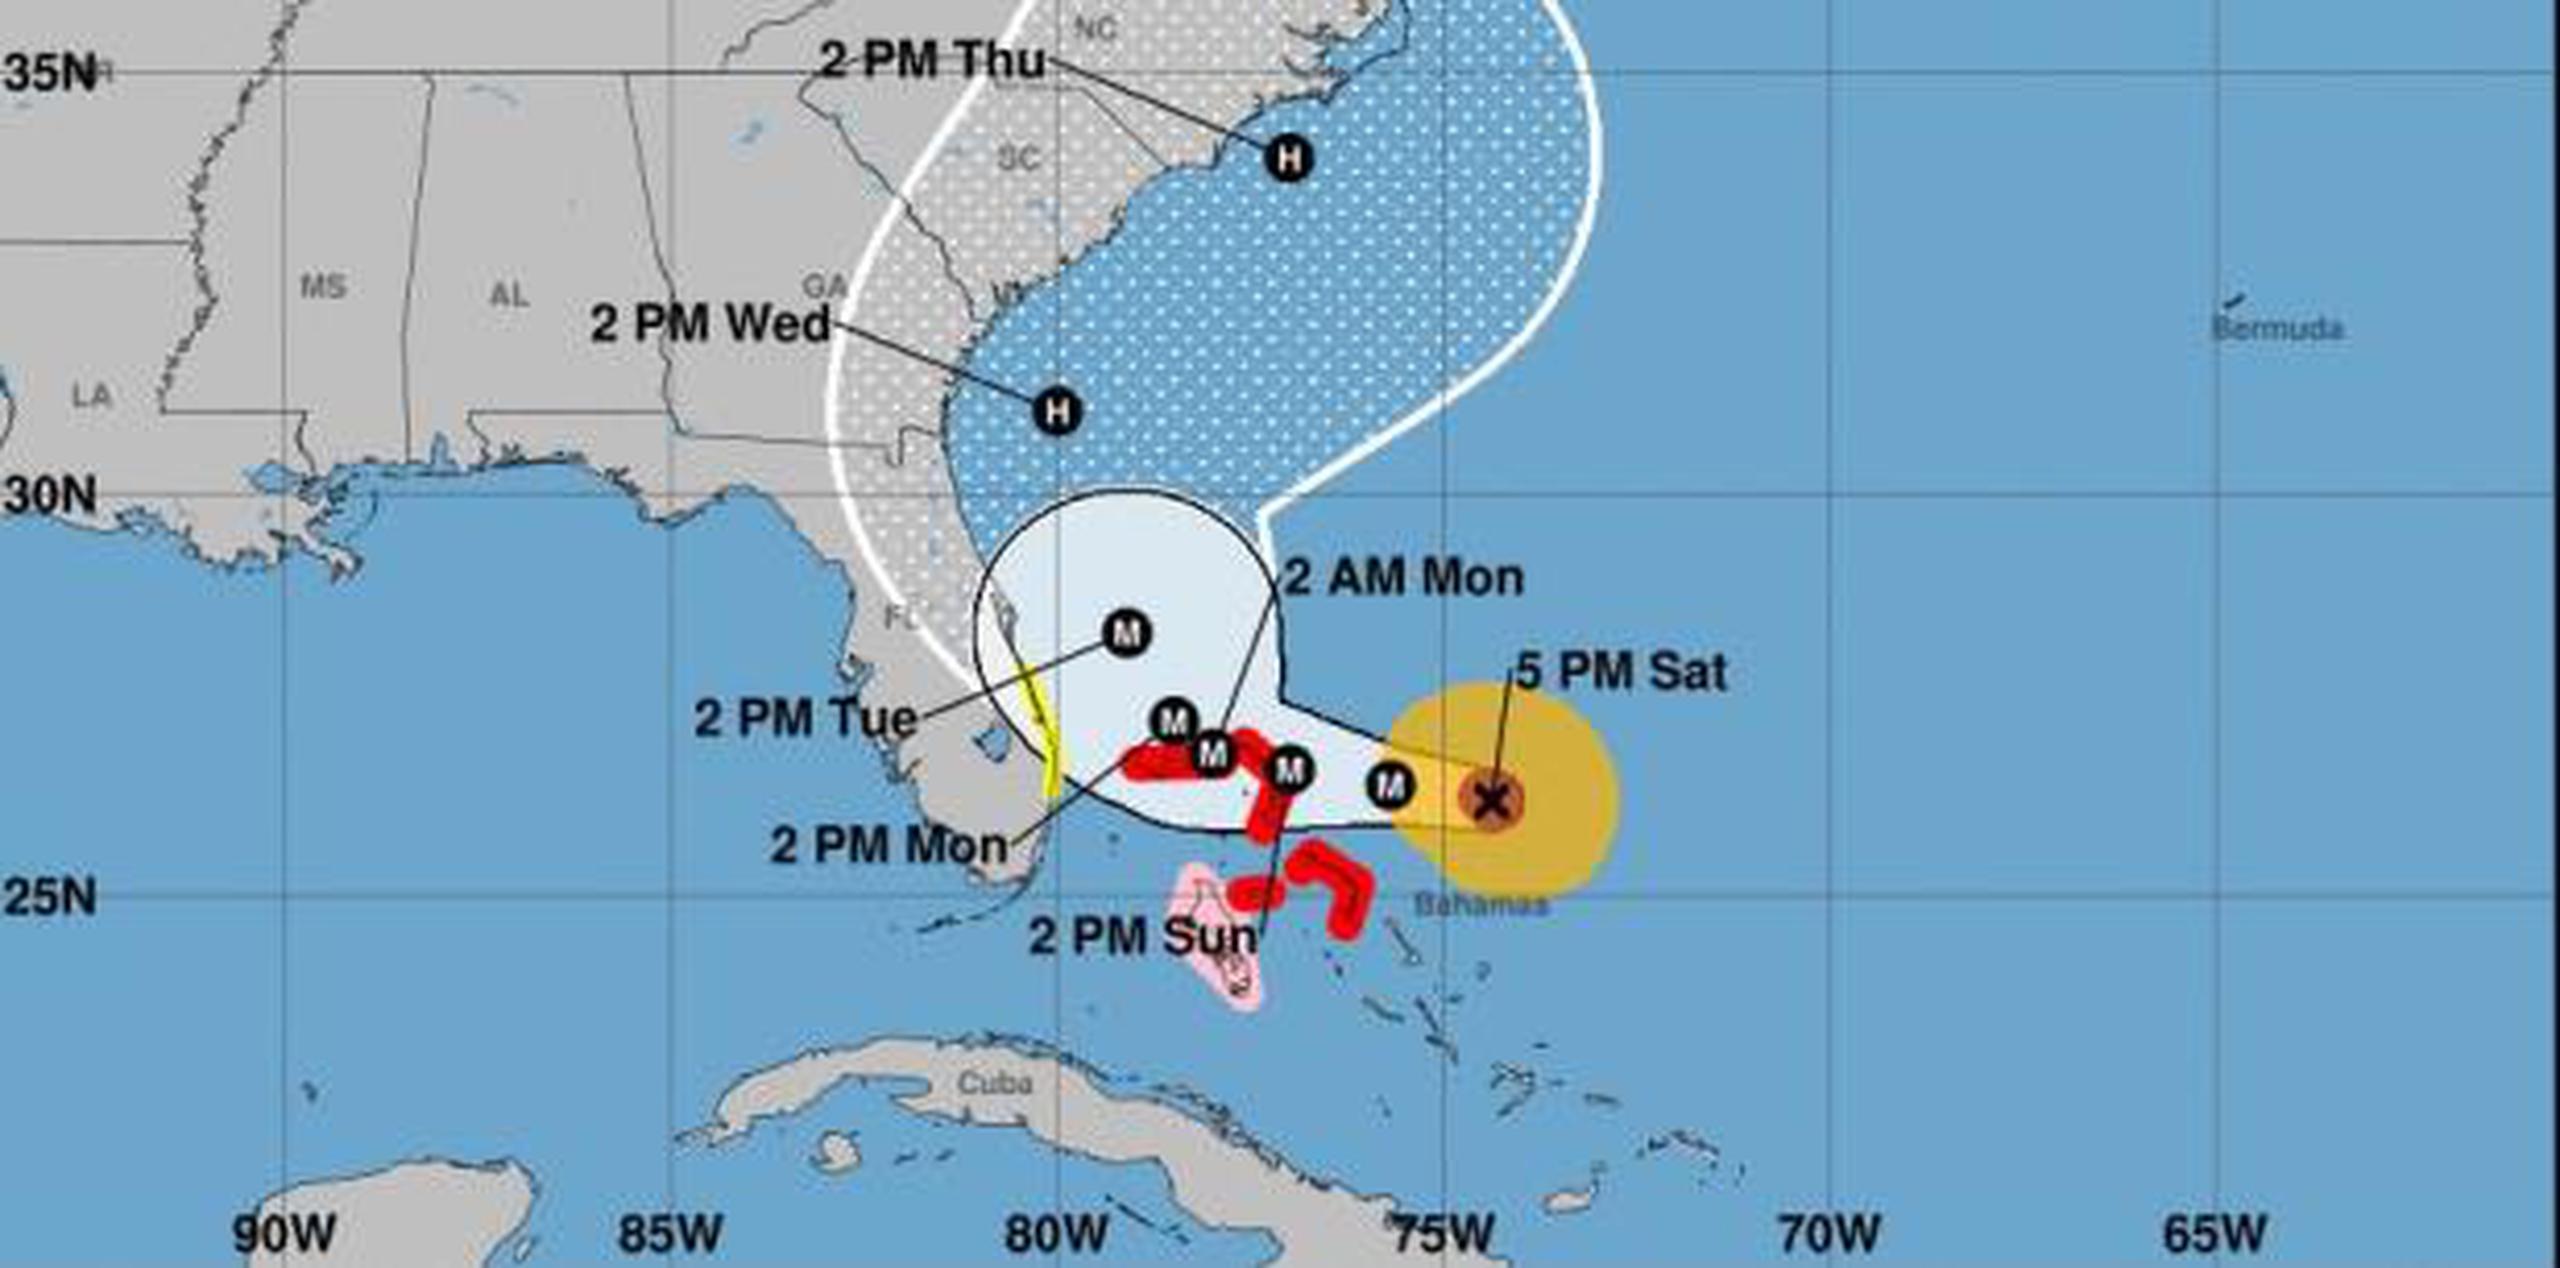 Una vigilancia de tormenta tropical fue emitida para partes de Florida. (NOAA)